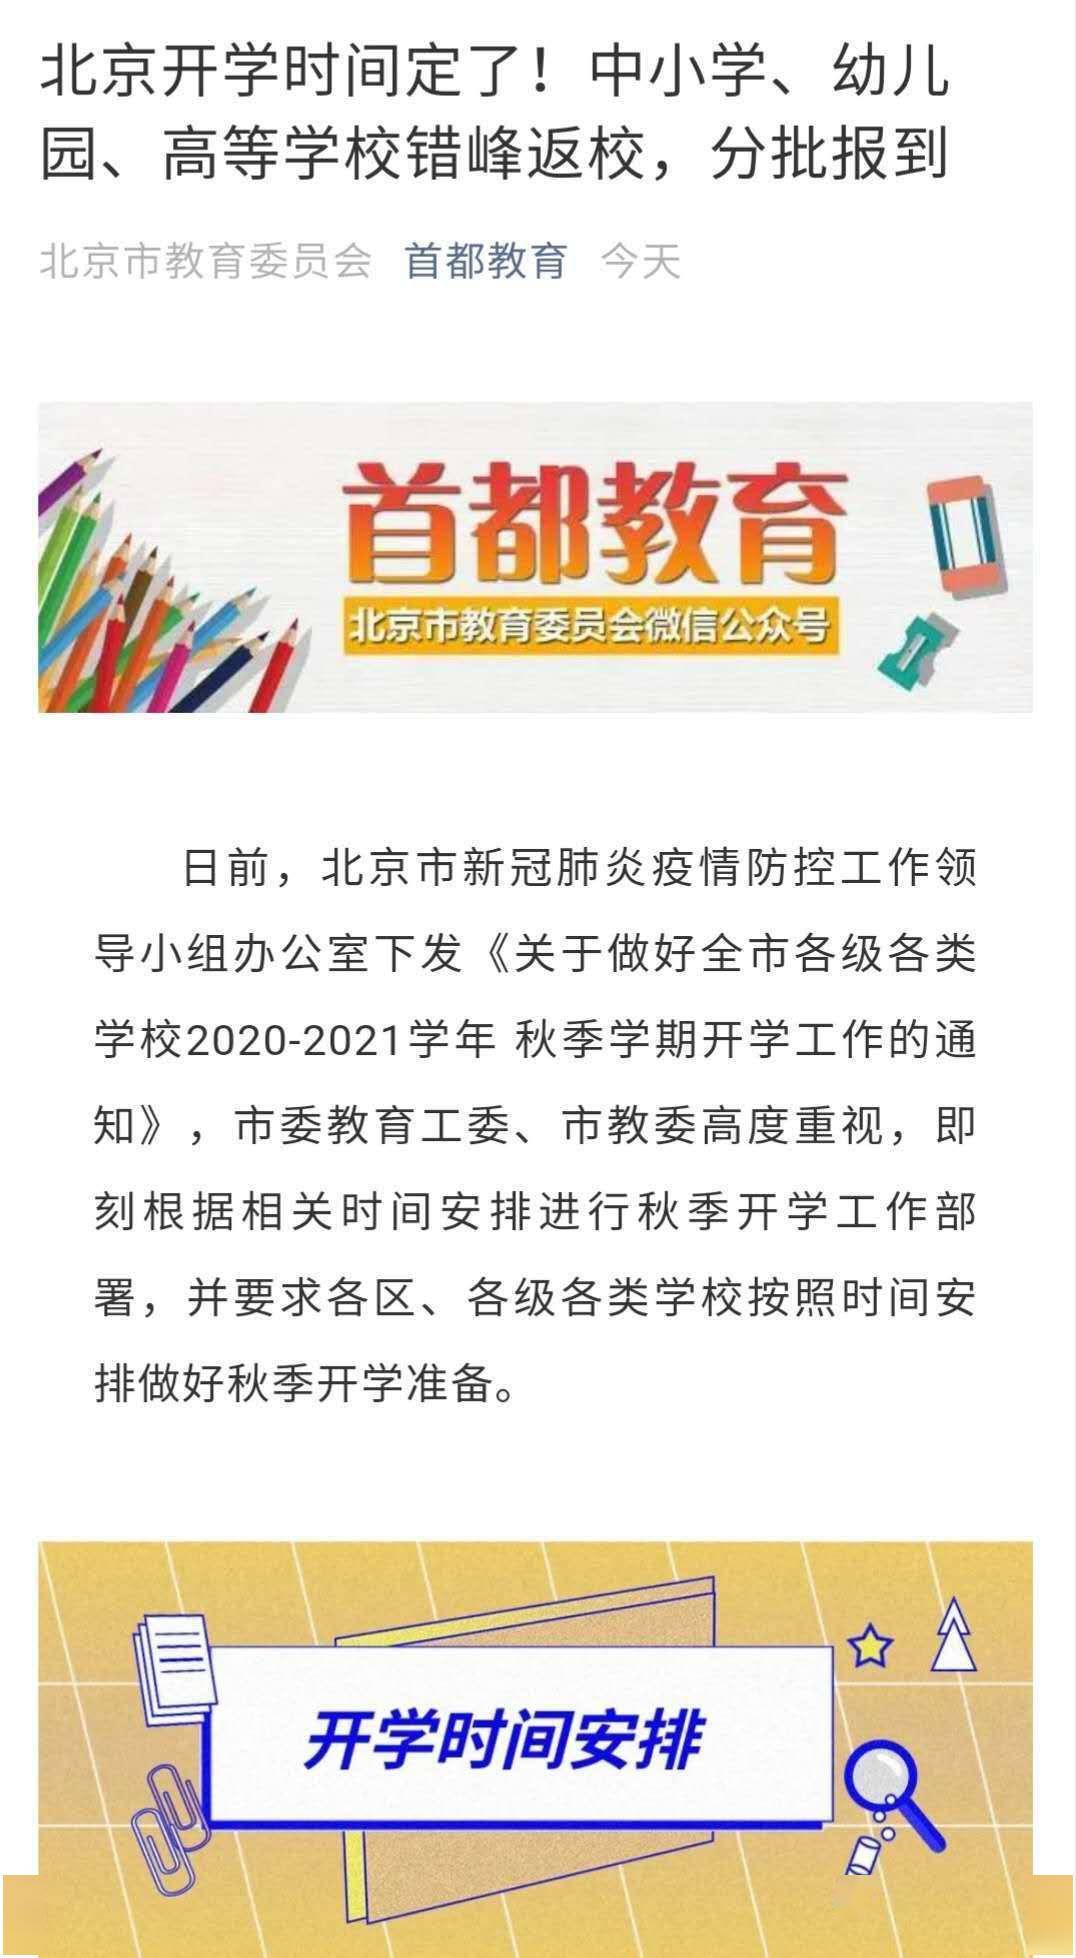 北京开学时间定了！高校8月15日起分批返校，中小学8月29日起分批开学